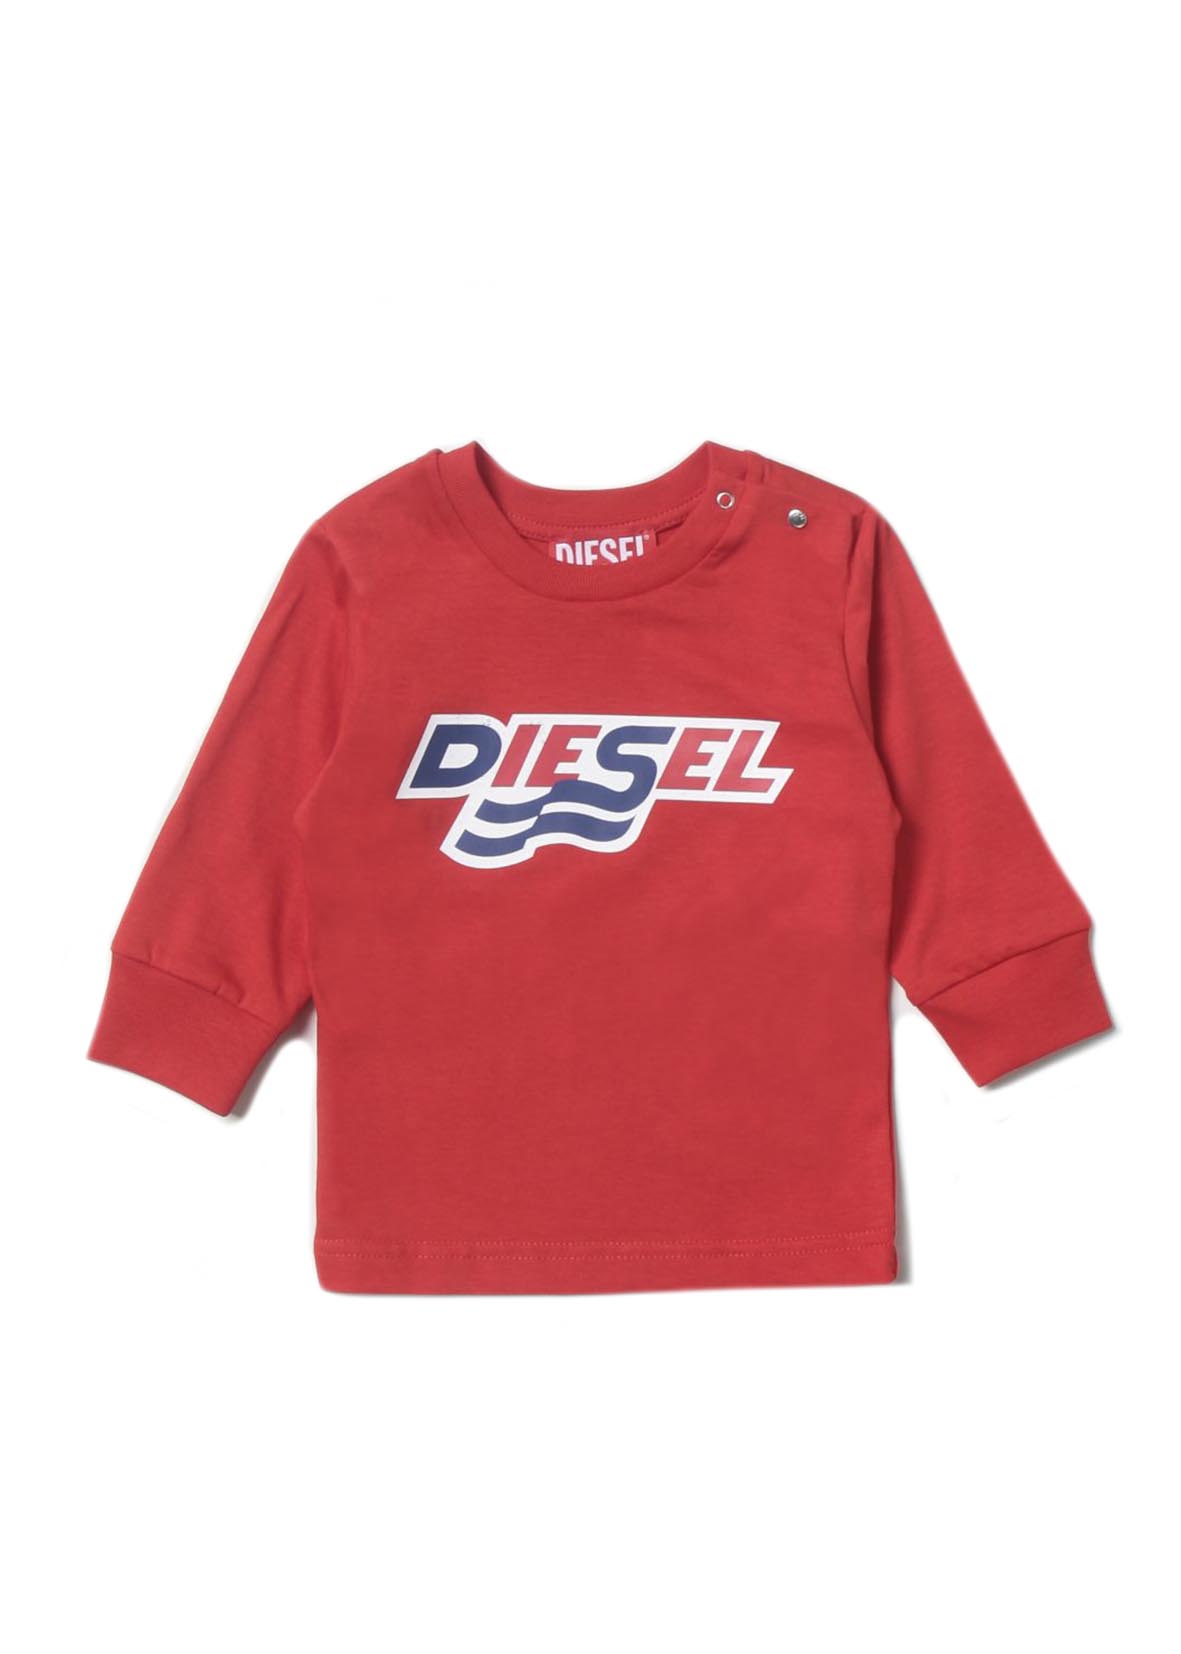 Diesel T-Shirt Rossa